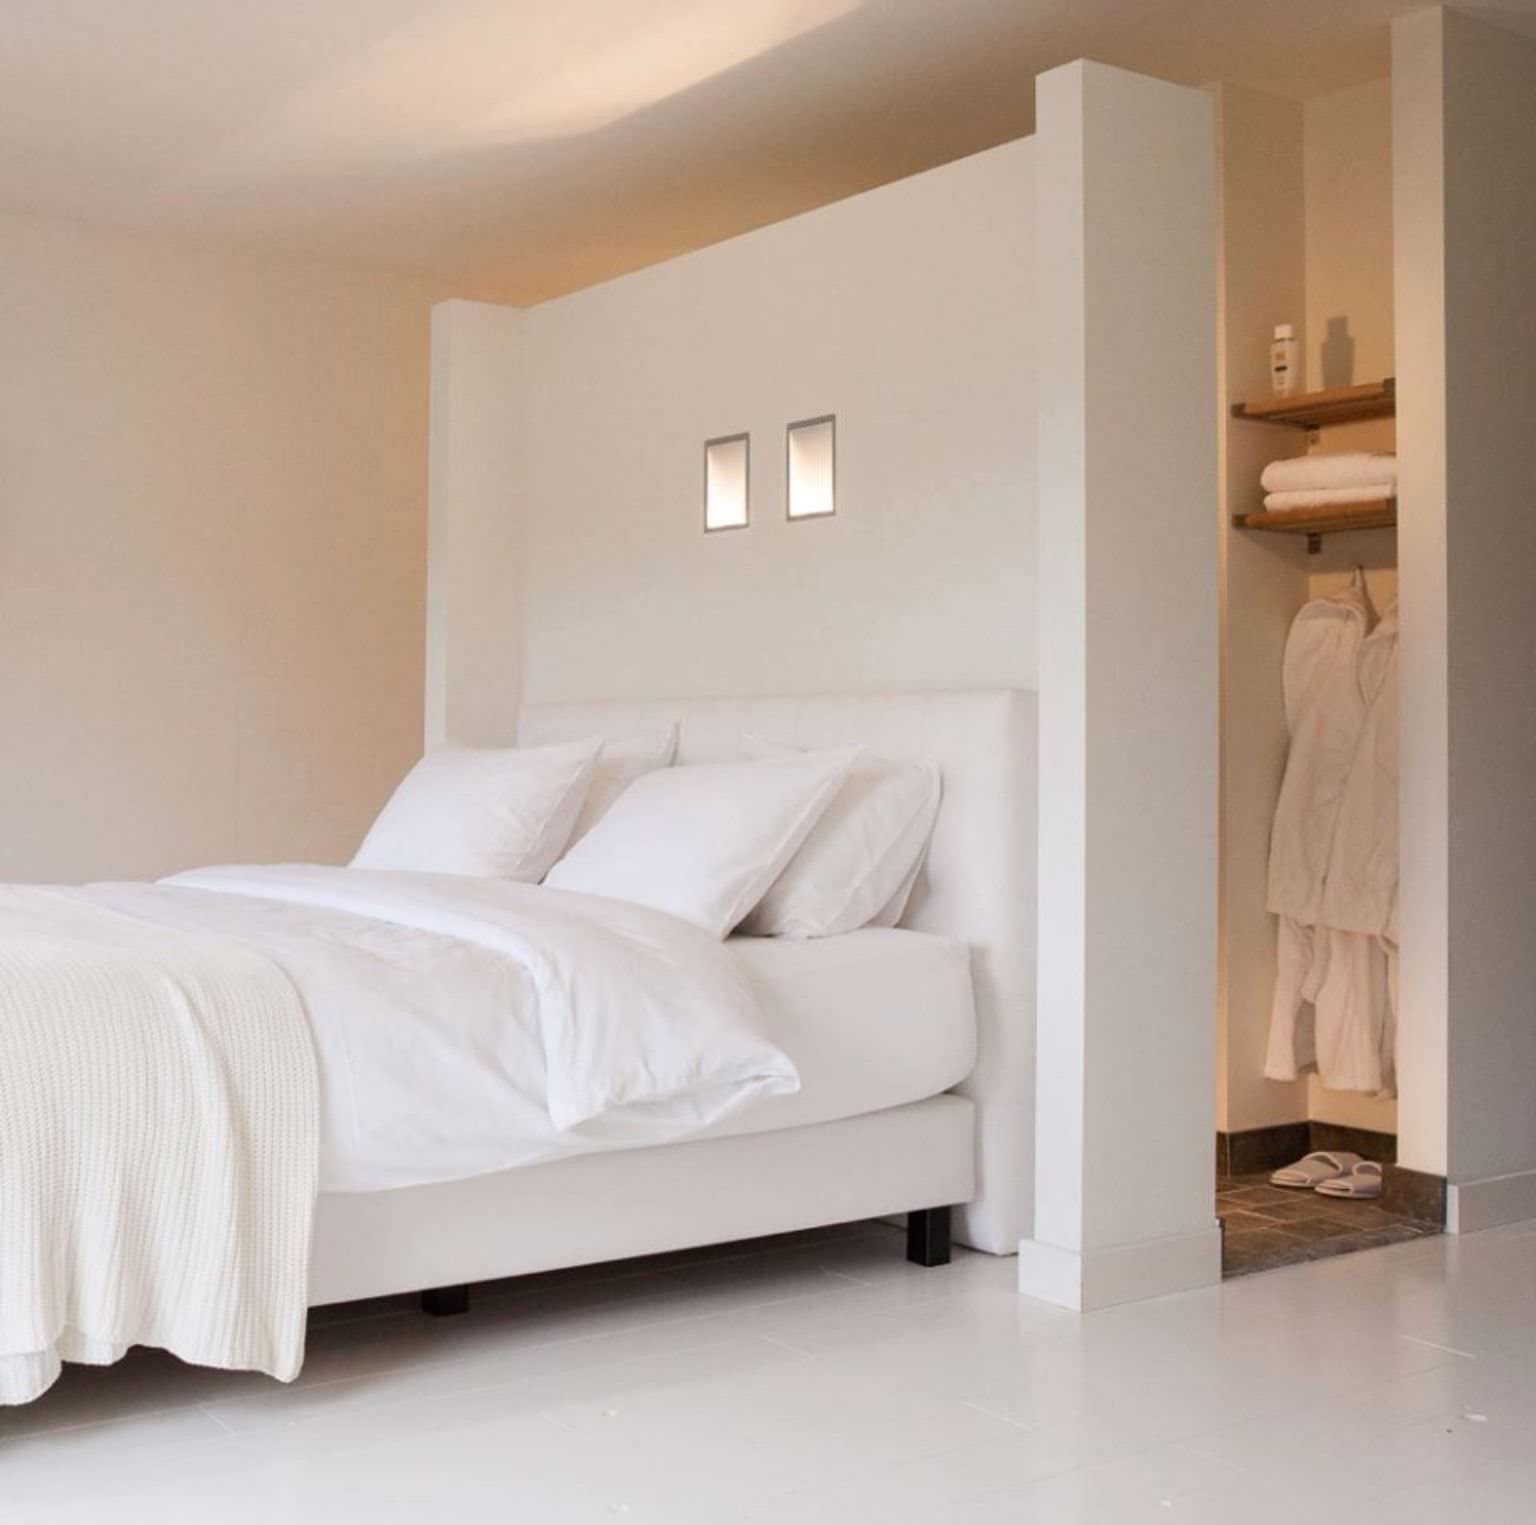 Idee camera da letto con parete divisorio in cartongesso, perfetto per dividere una cabina armadio ma anche un piccolo bagno / doccia. Elegante e funzionale.